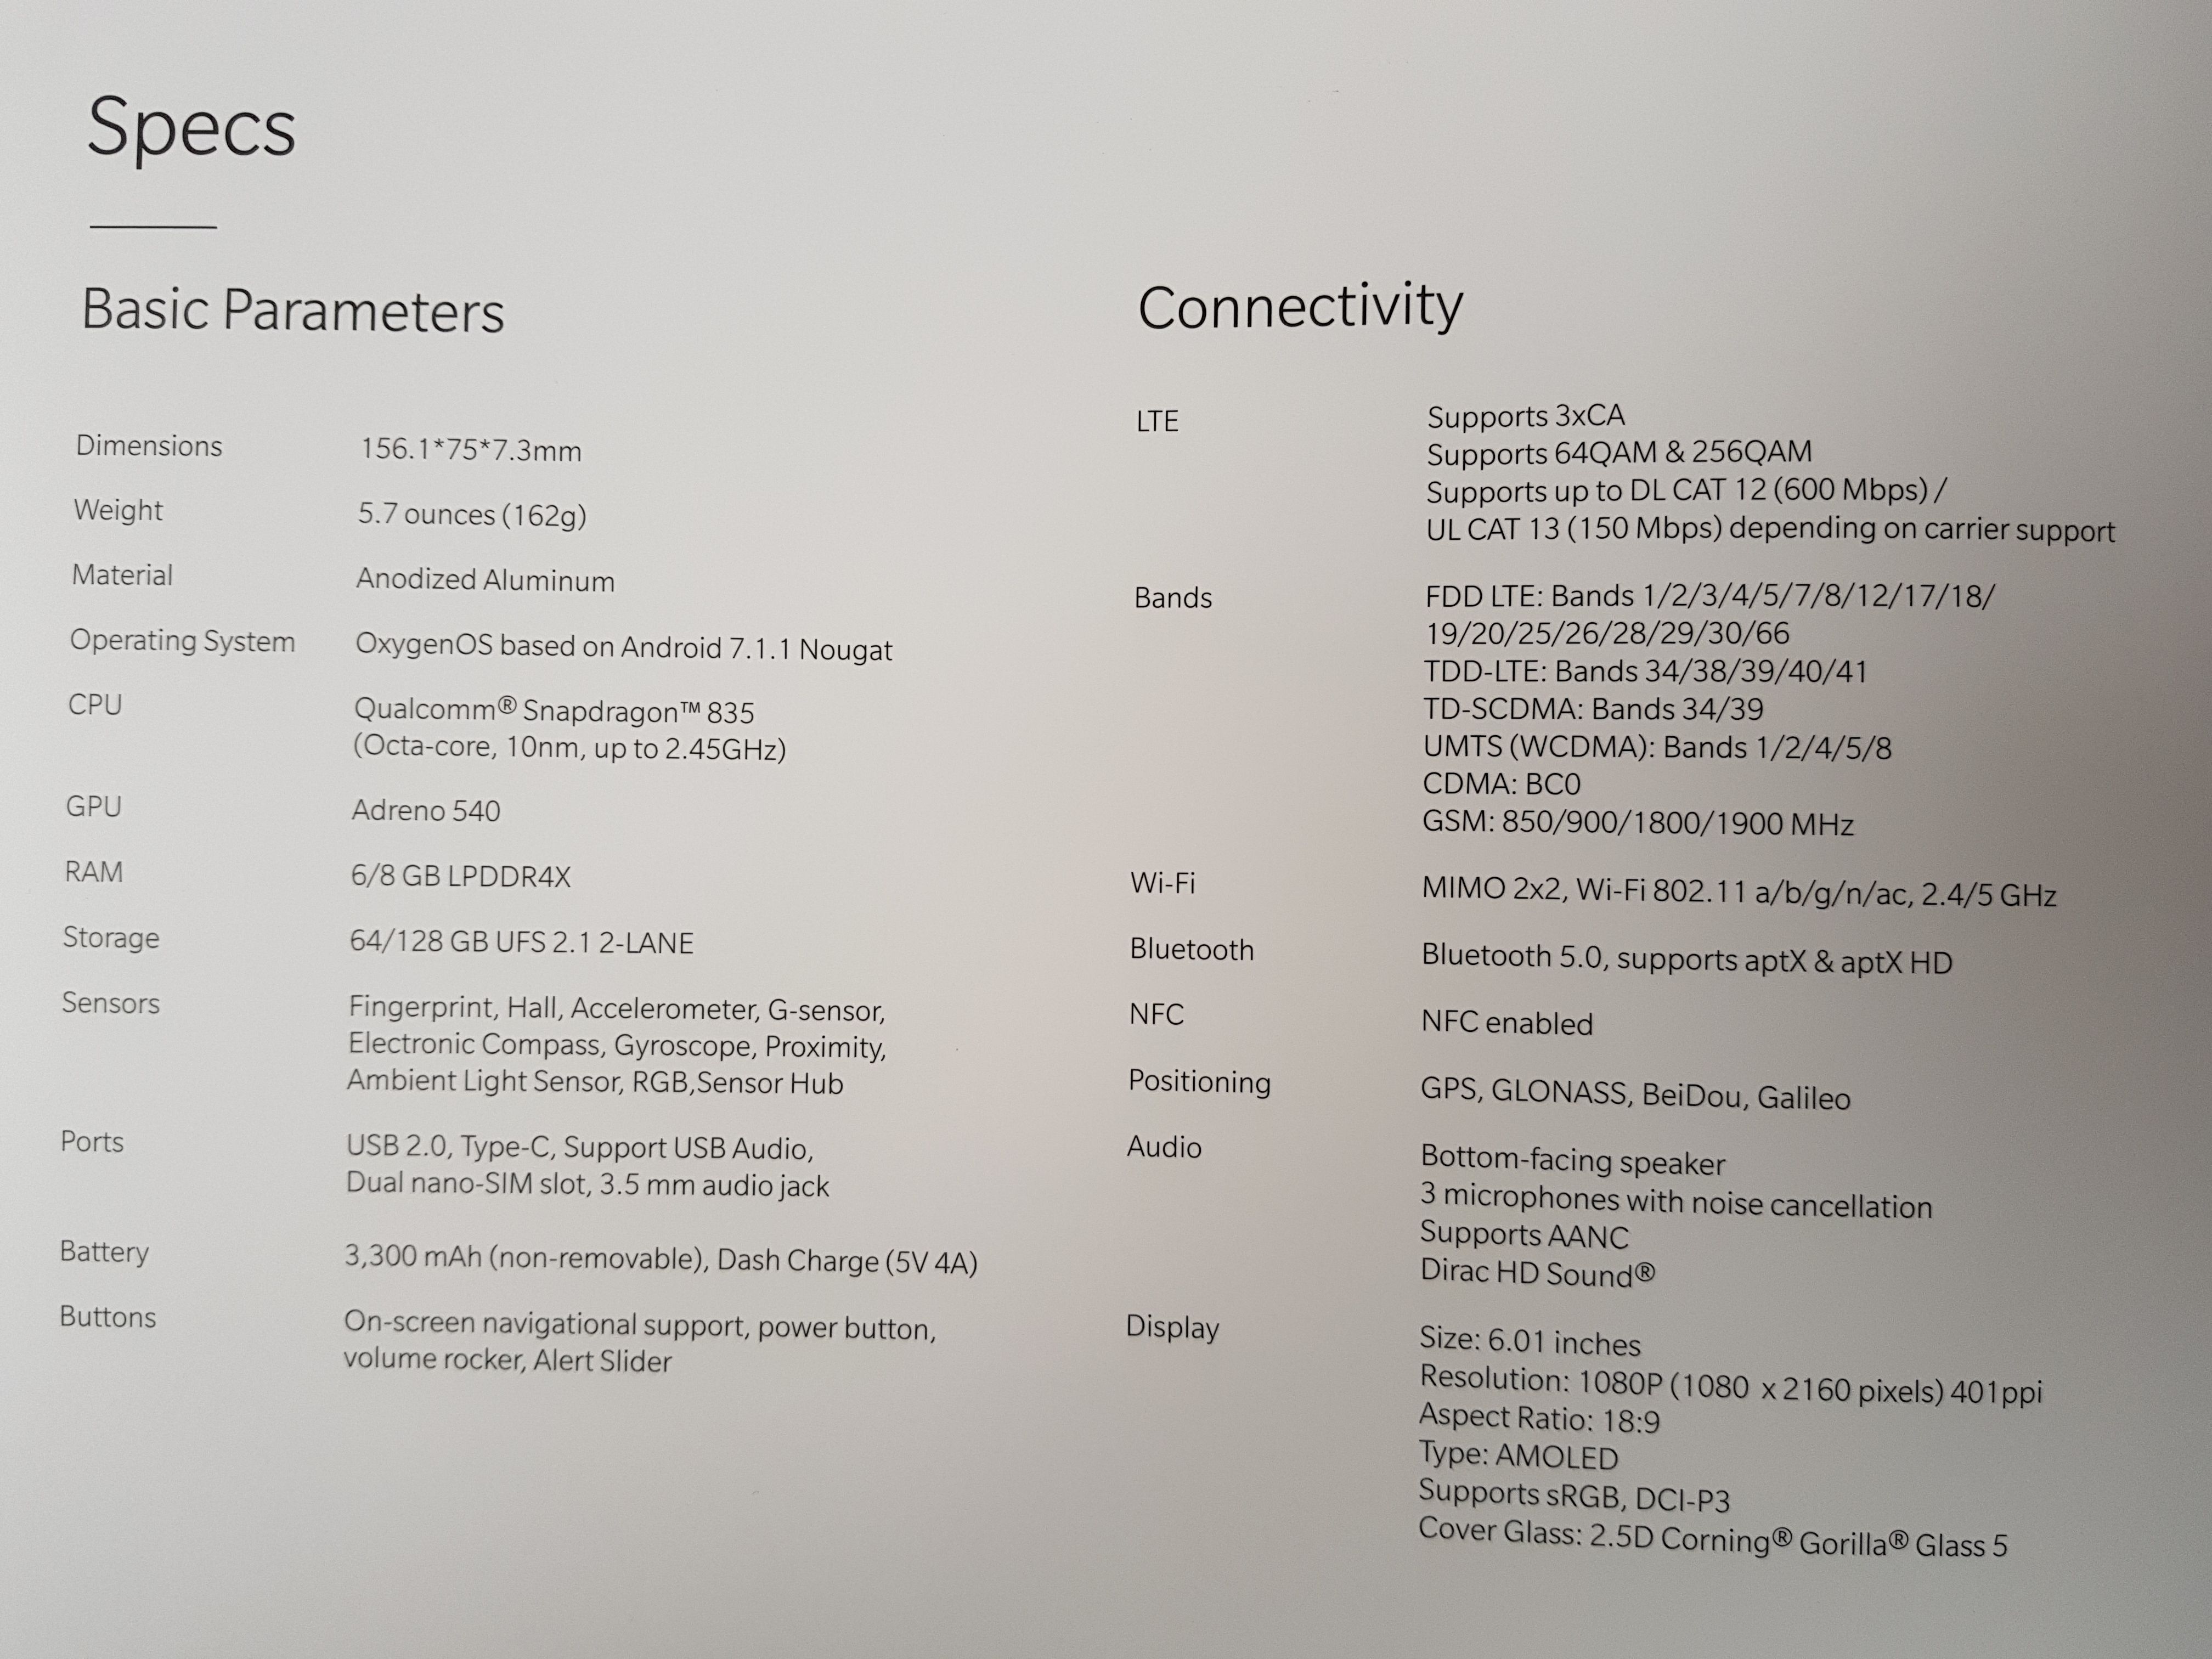 หลุดหมดเปลือก.. หลุดตัวเครื่องและรายละเอียดของ OnePlus 5T แบบเต็มๆ ก่อนงานเปิดตัว